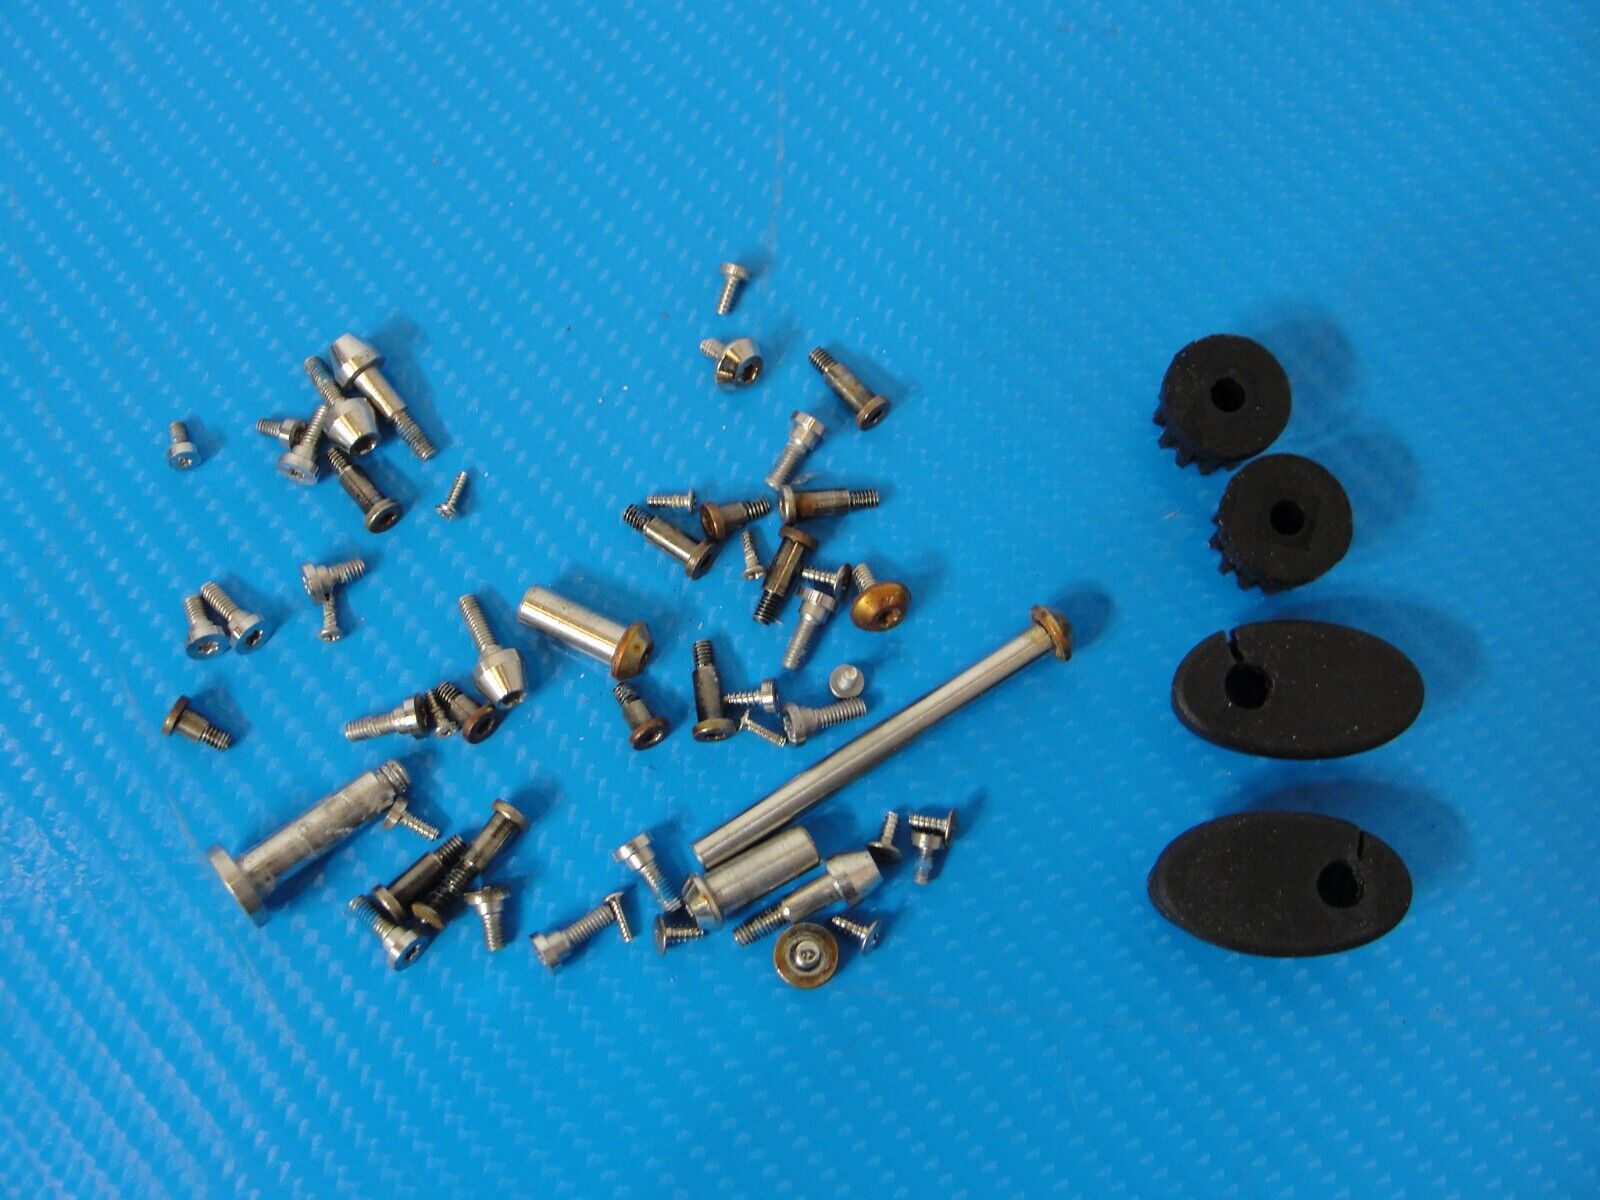 DJI Inspire 1 Drone Screws Screw Set Kit and Rubber Rubbers for Repair